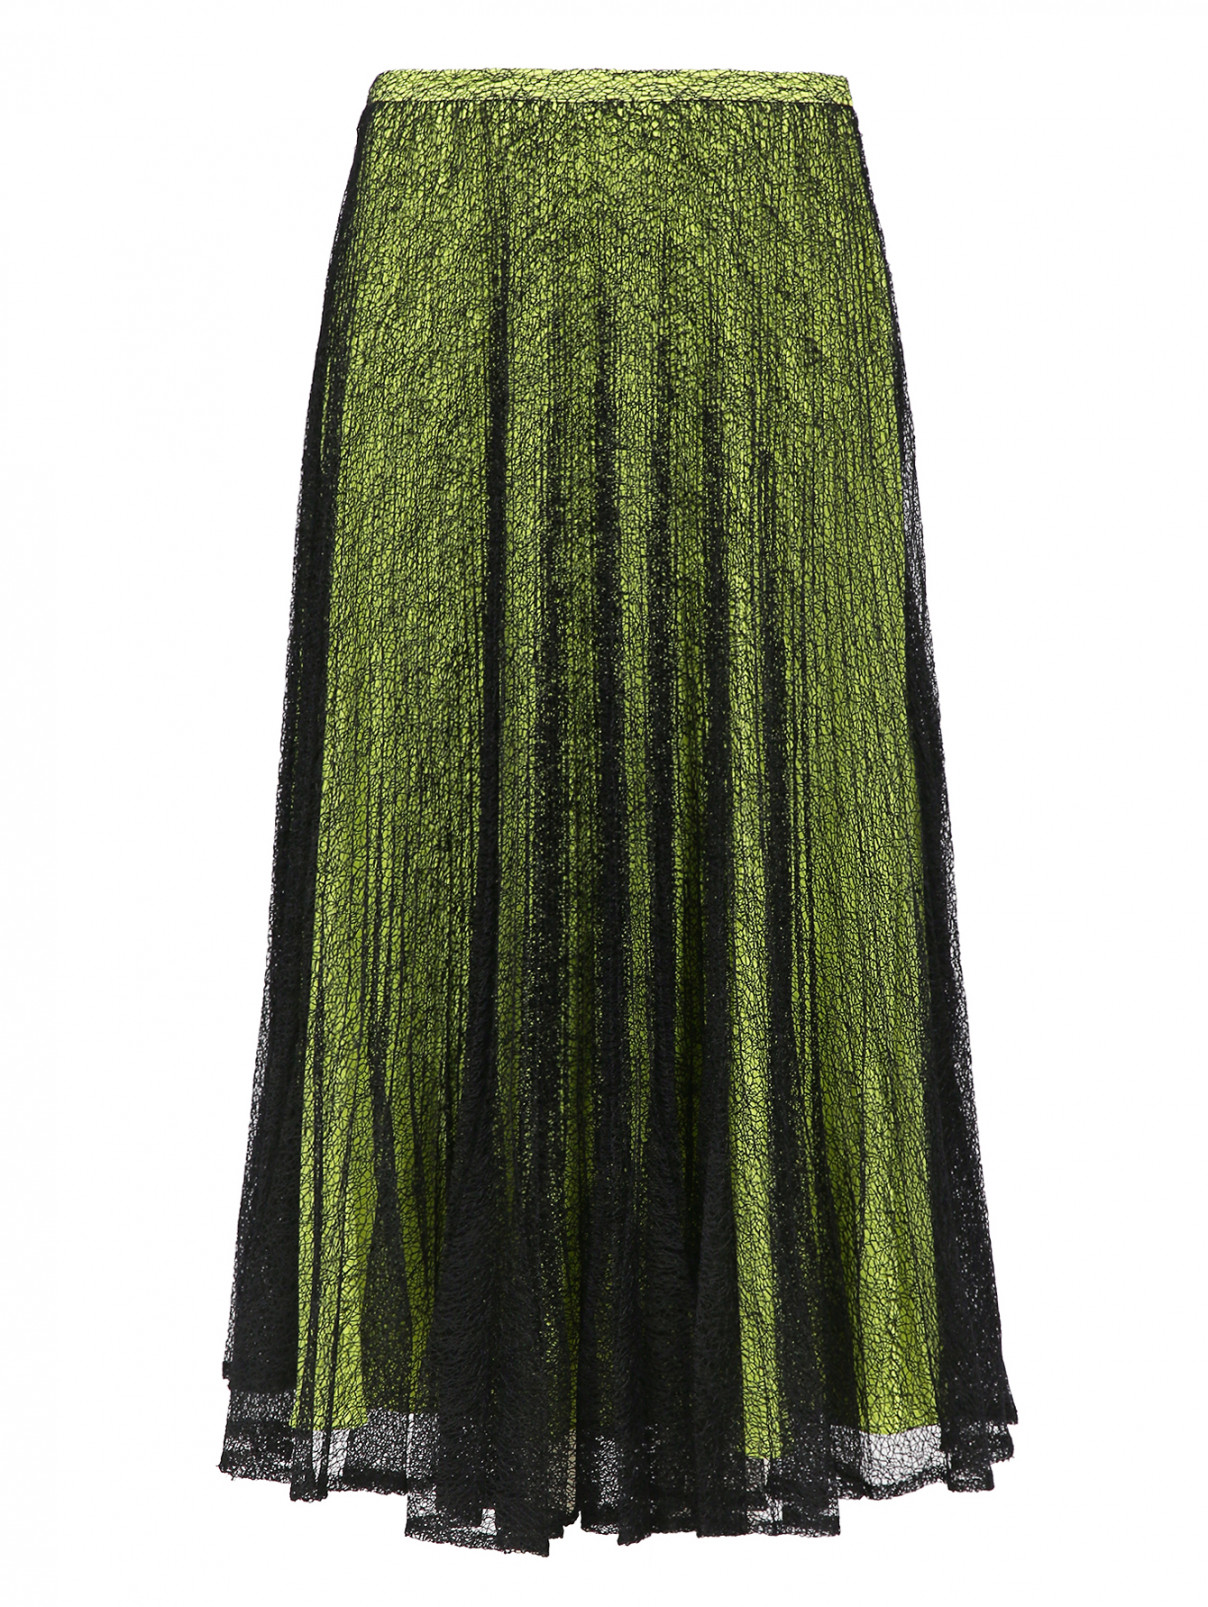 Многослойная юбка с плиссированной сеткой Raoul  –  Общий вид  – Цвет:  Желтый